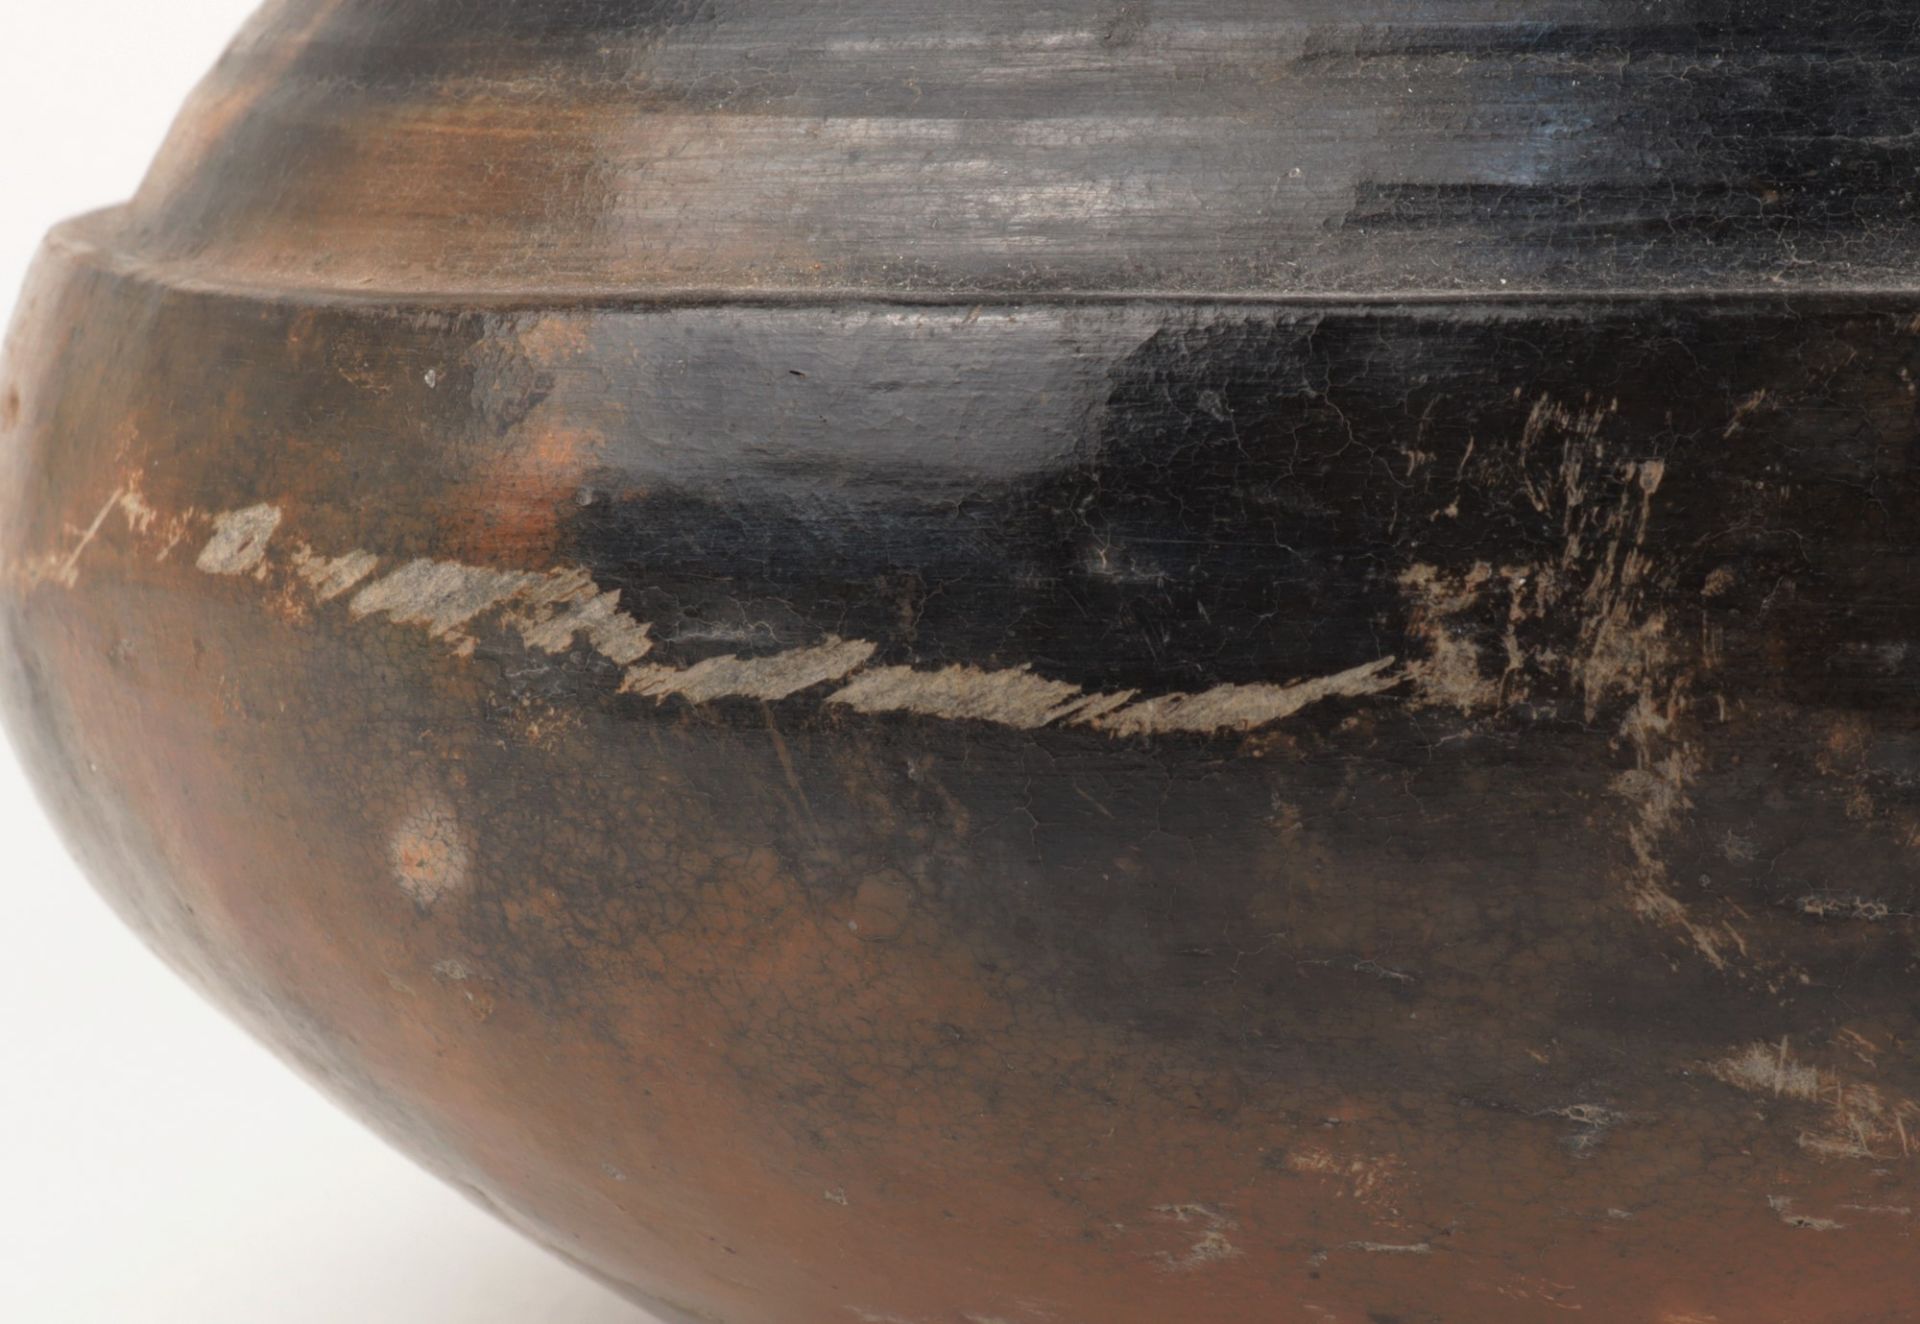 Afrika - Vorratstopf Keramik, rund, halbkugeliger Stand, gedrückte bauchiger Korpus, eingezogener - Bild 4 aus 4